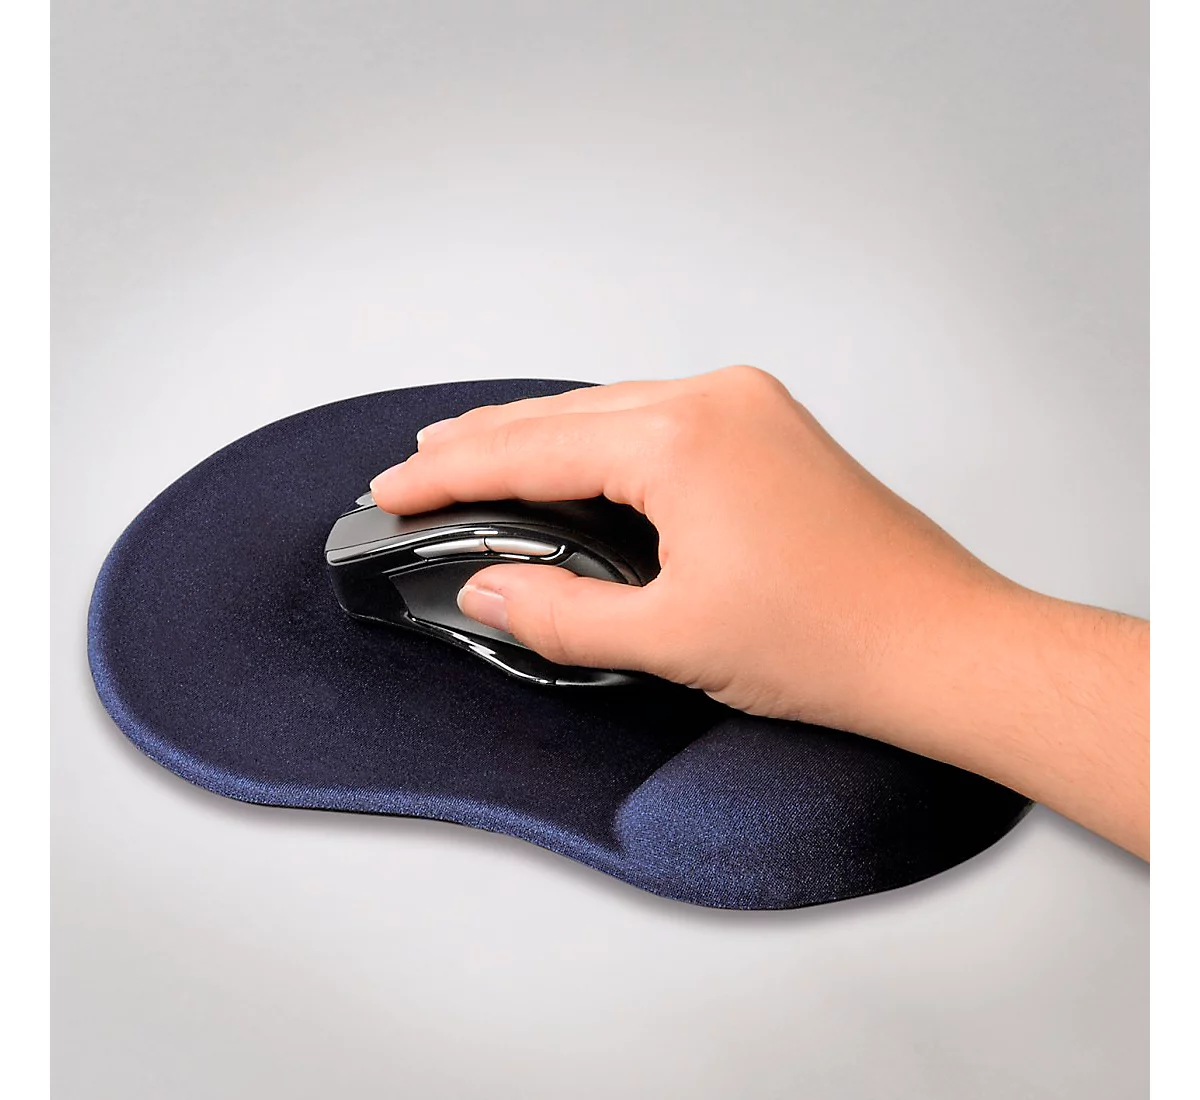 Tapis de souris repose poignet de qualité ergonomique ultra fin bleu